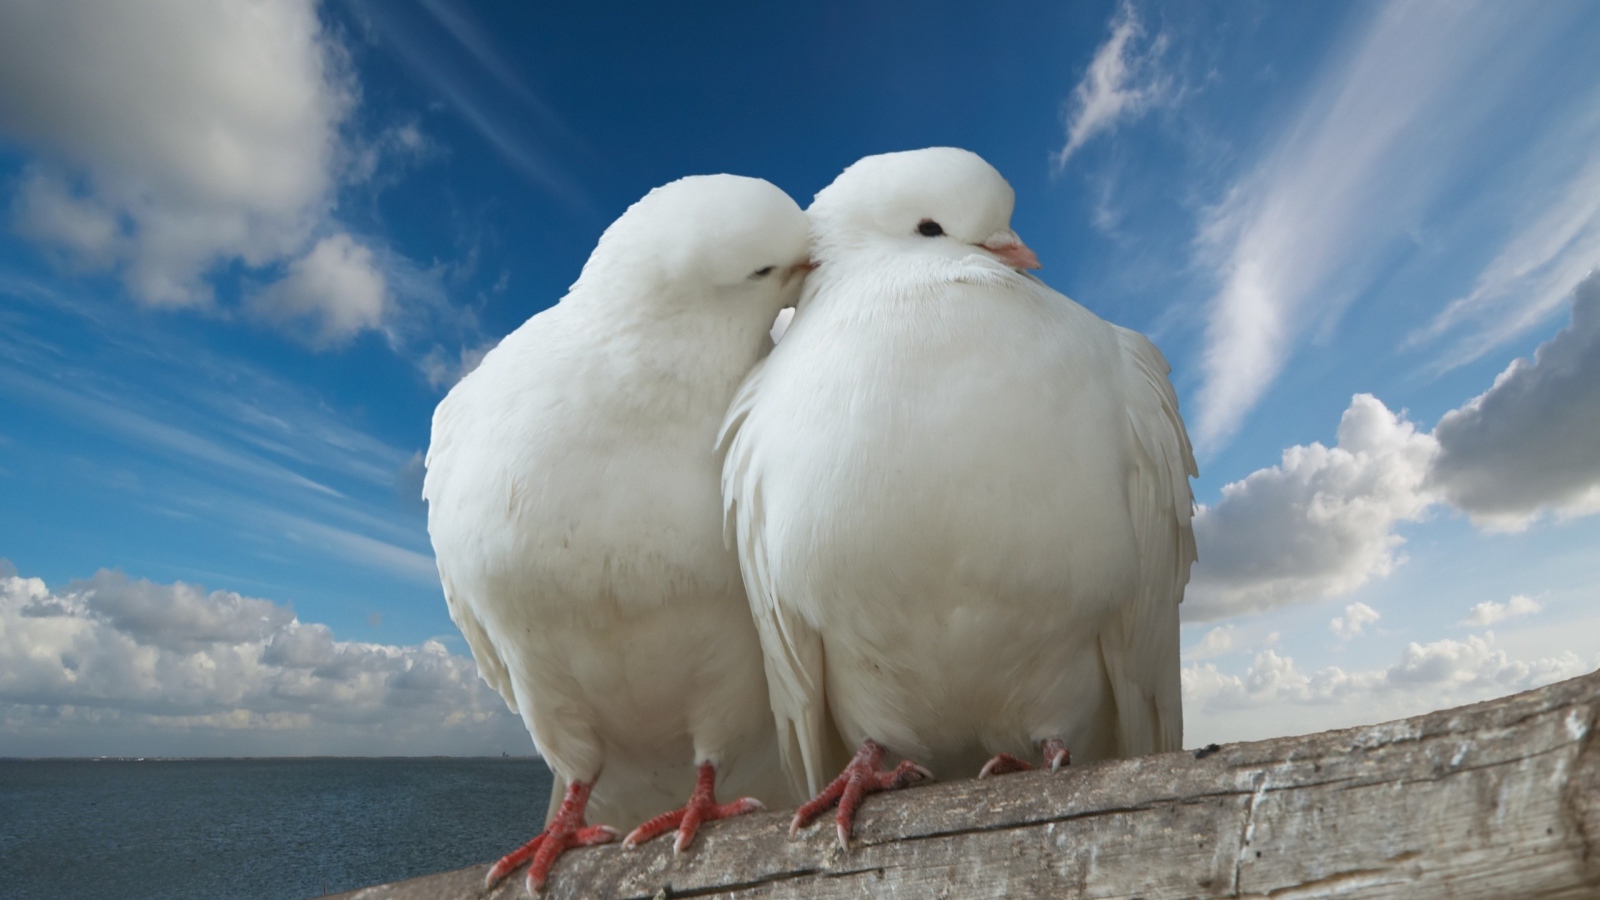 Two white dove